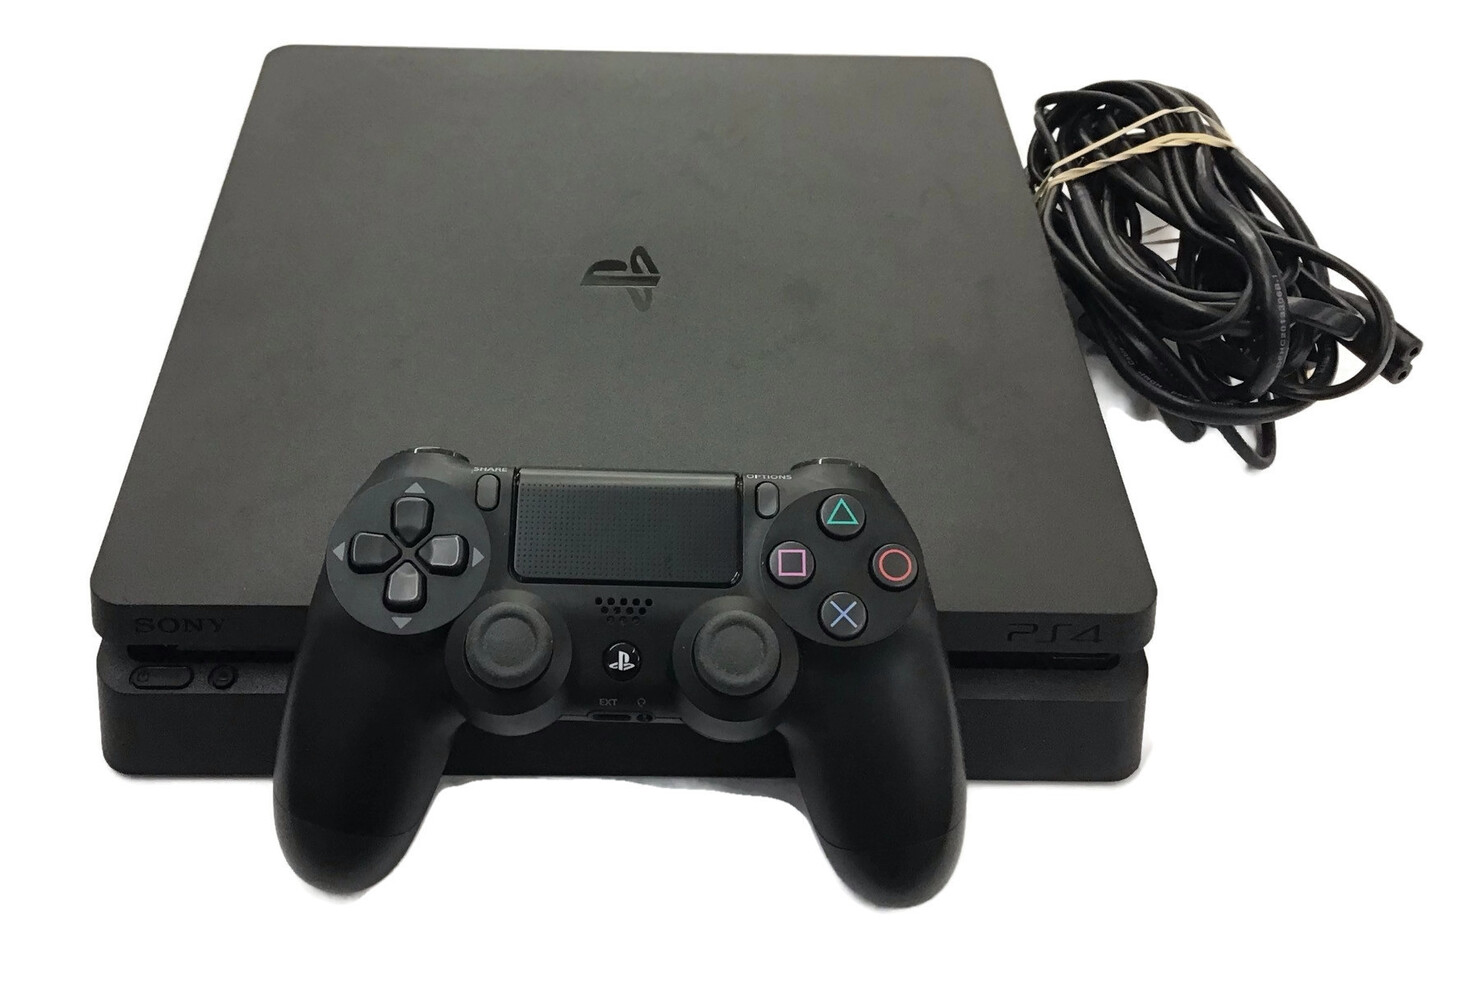  Sony PlayStation 4 Slim Cuh -2215B 1TB Console - Jet Black USA Pawn